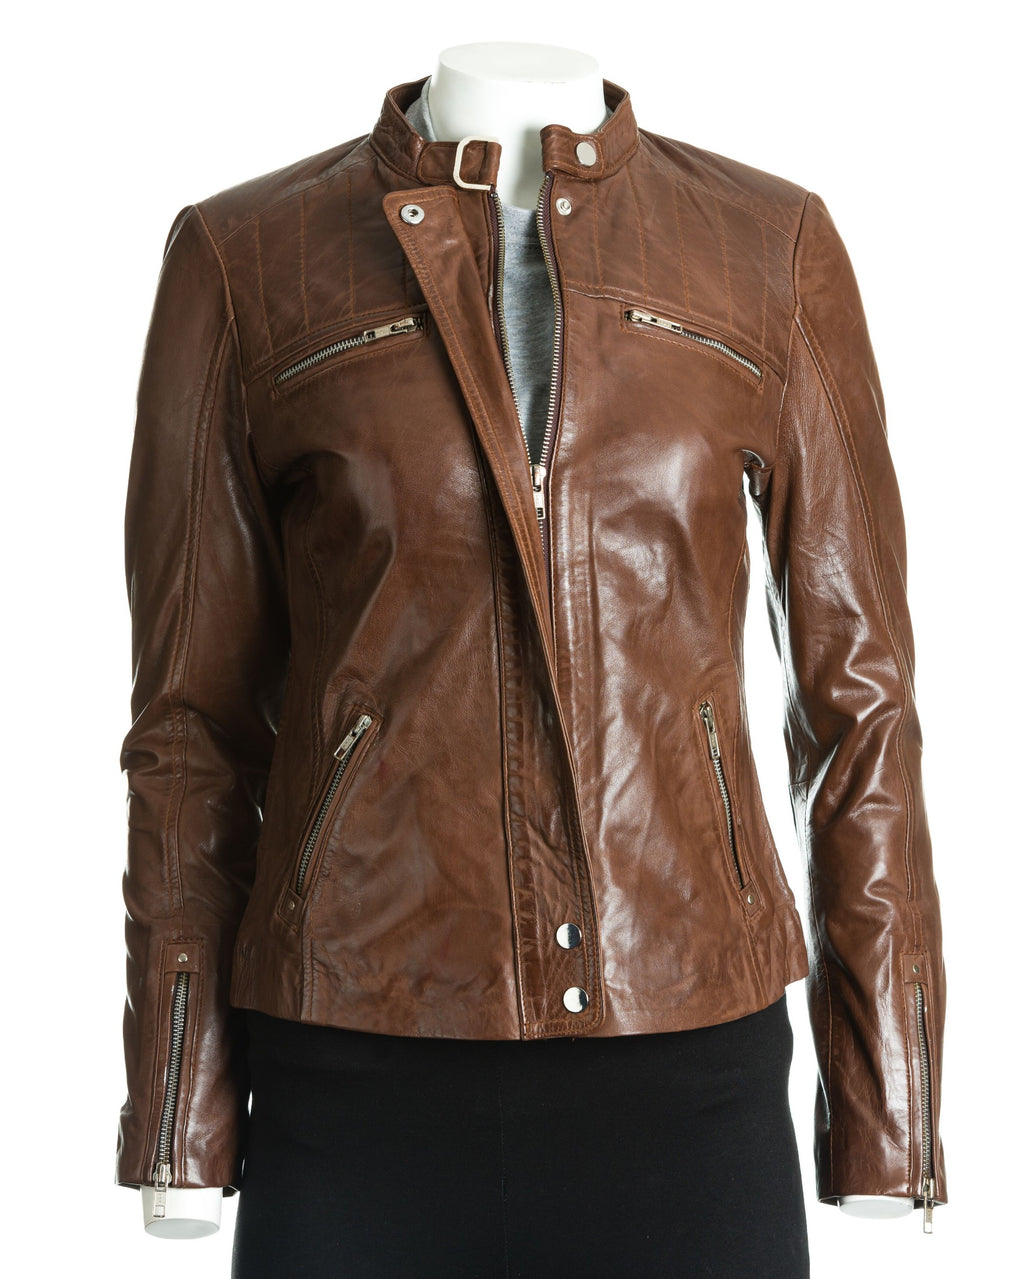 Women's Leather Biker Jacket with Stitch Detail: Zeta